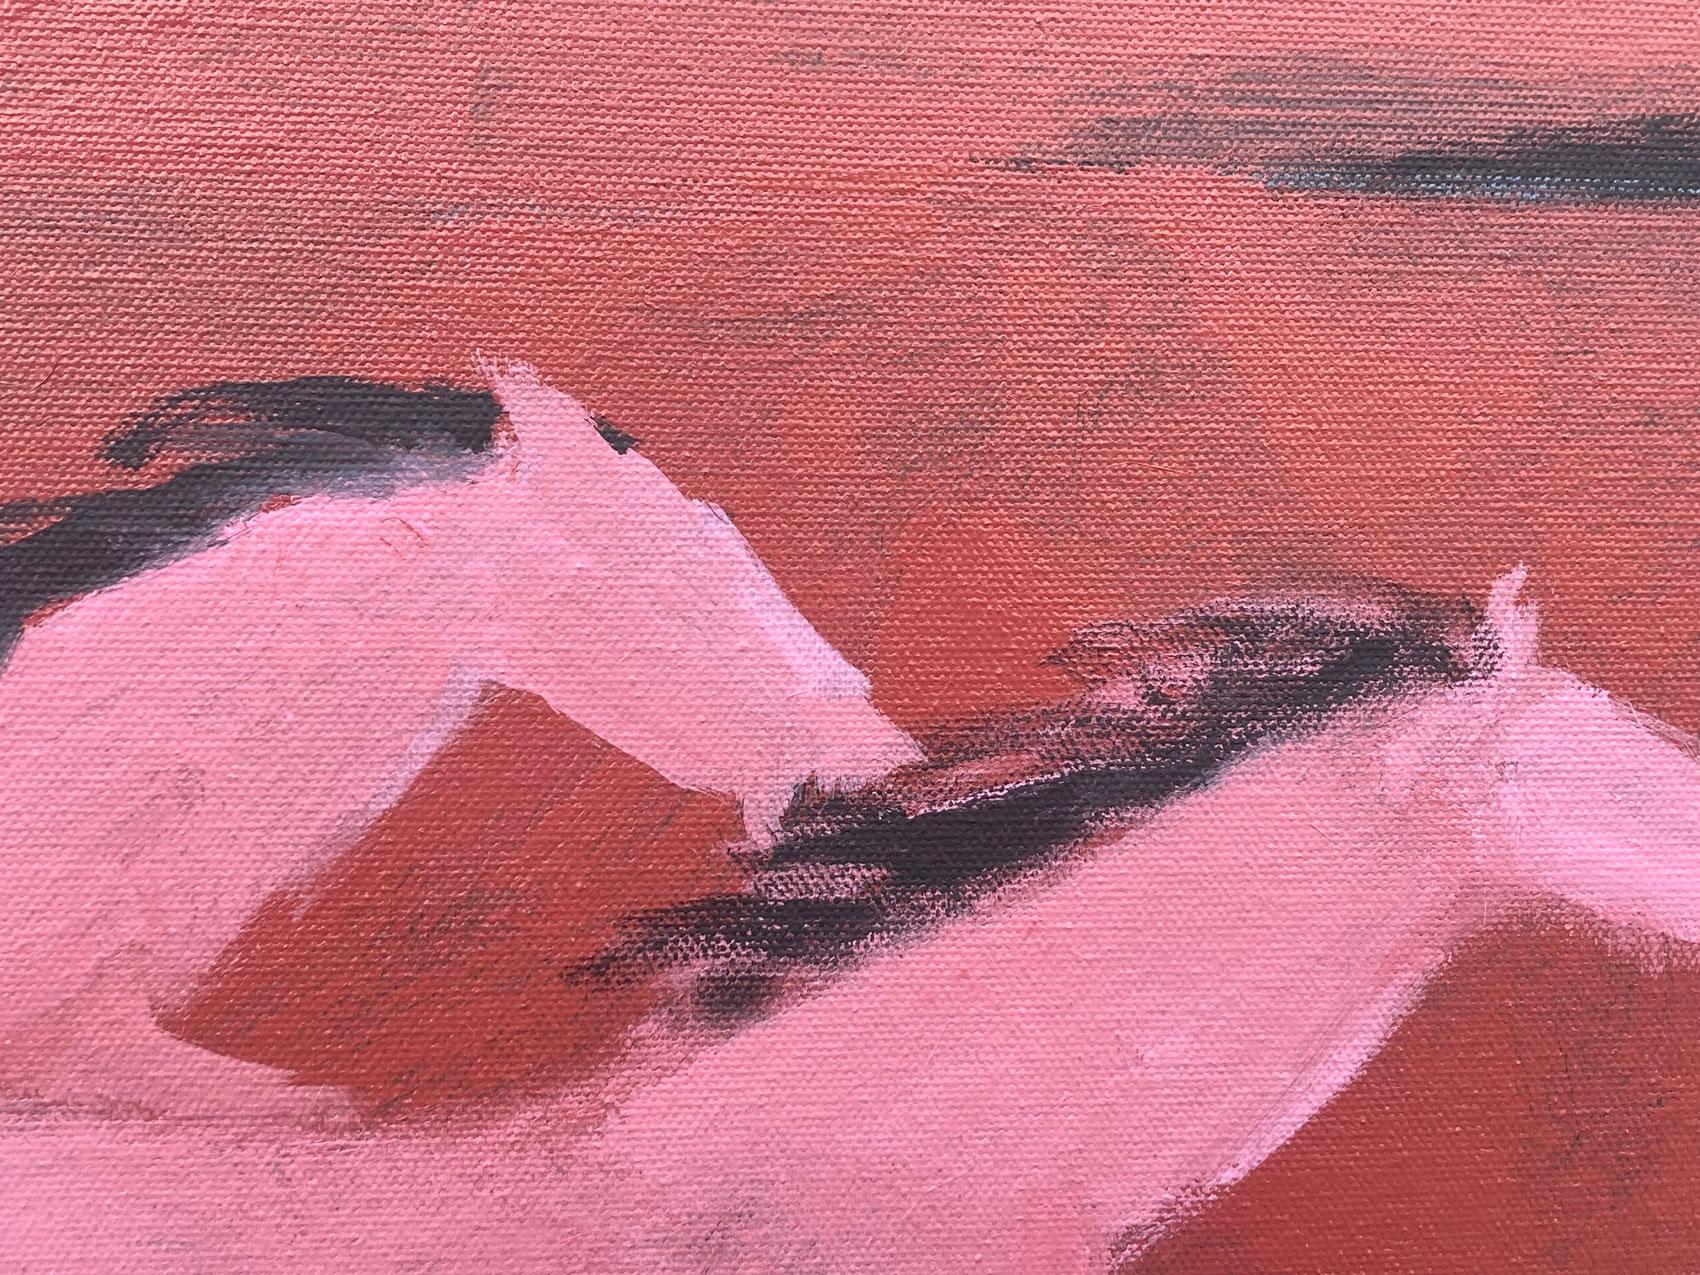 <p>Kommentare des Künstlers<br>In dem Werk des Künstlers Nick Bontorno laufen zwei rosafarbene Pferde durch eine große Weite. Die leuchtenden Rottöne der galoppierenden Pferde strahlen eine intensive Vitalität und Lebensfreude aus. Nick malt in